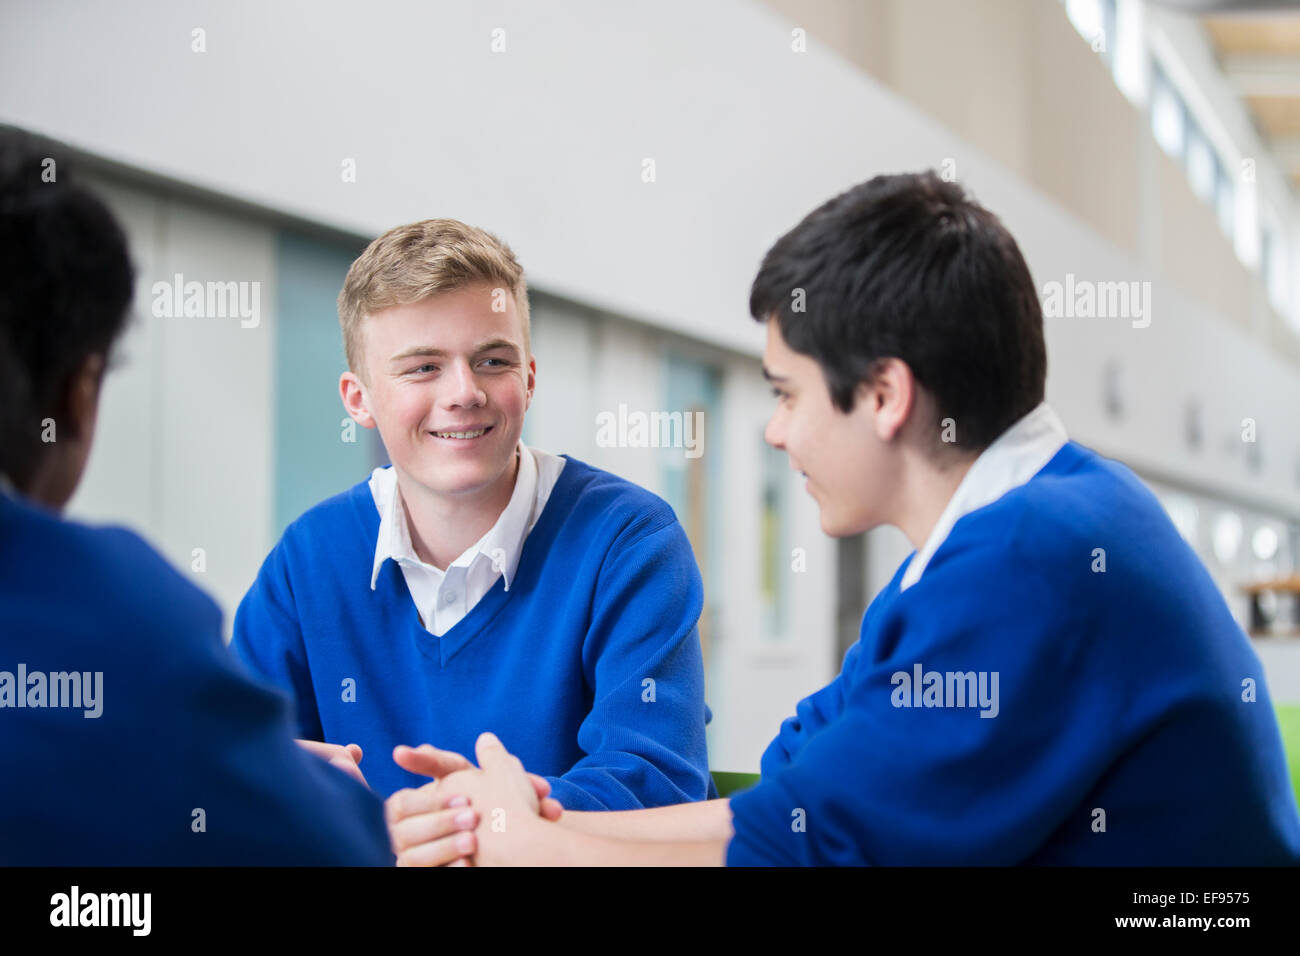 Drei männliche Studenten tragen blaue Schuluniformen sprechen im Korridor Stockfoto